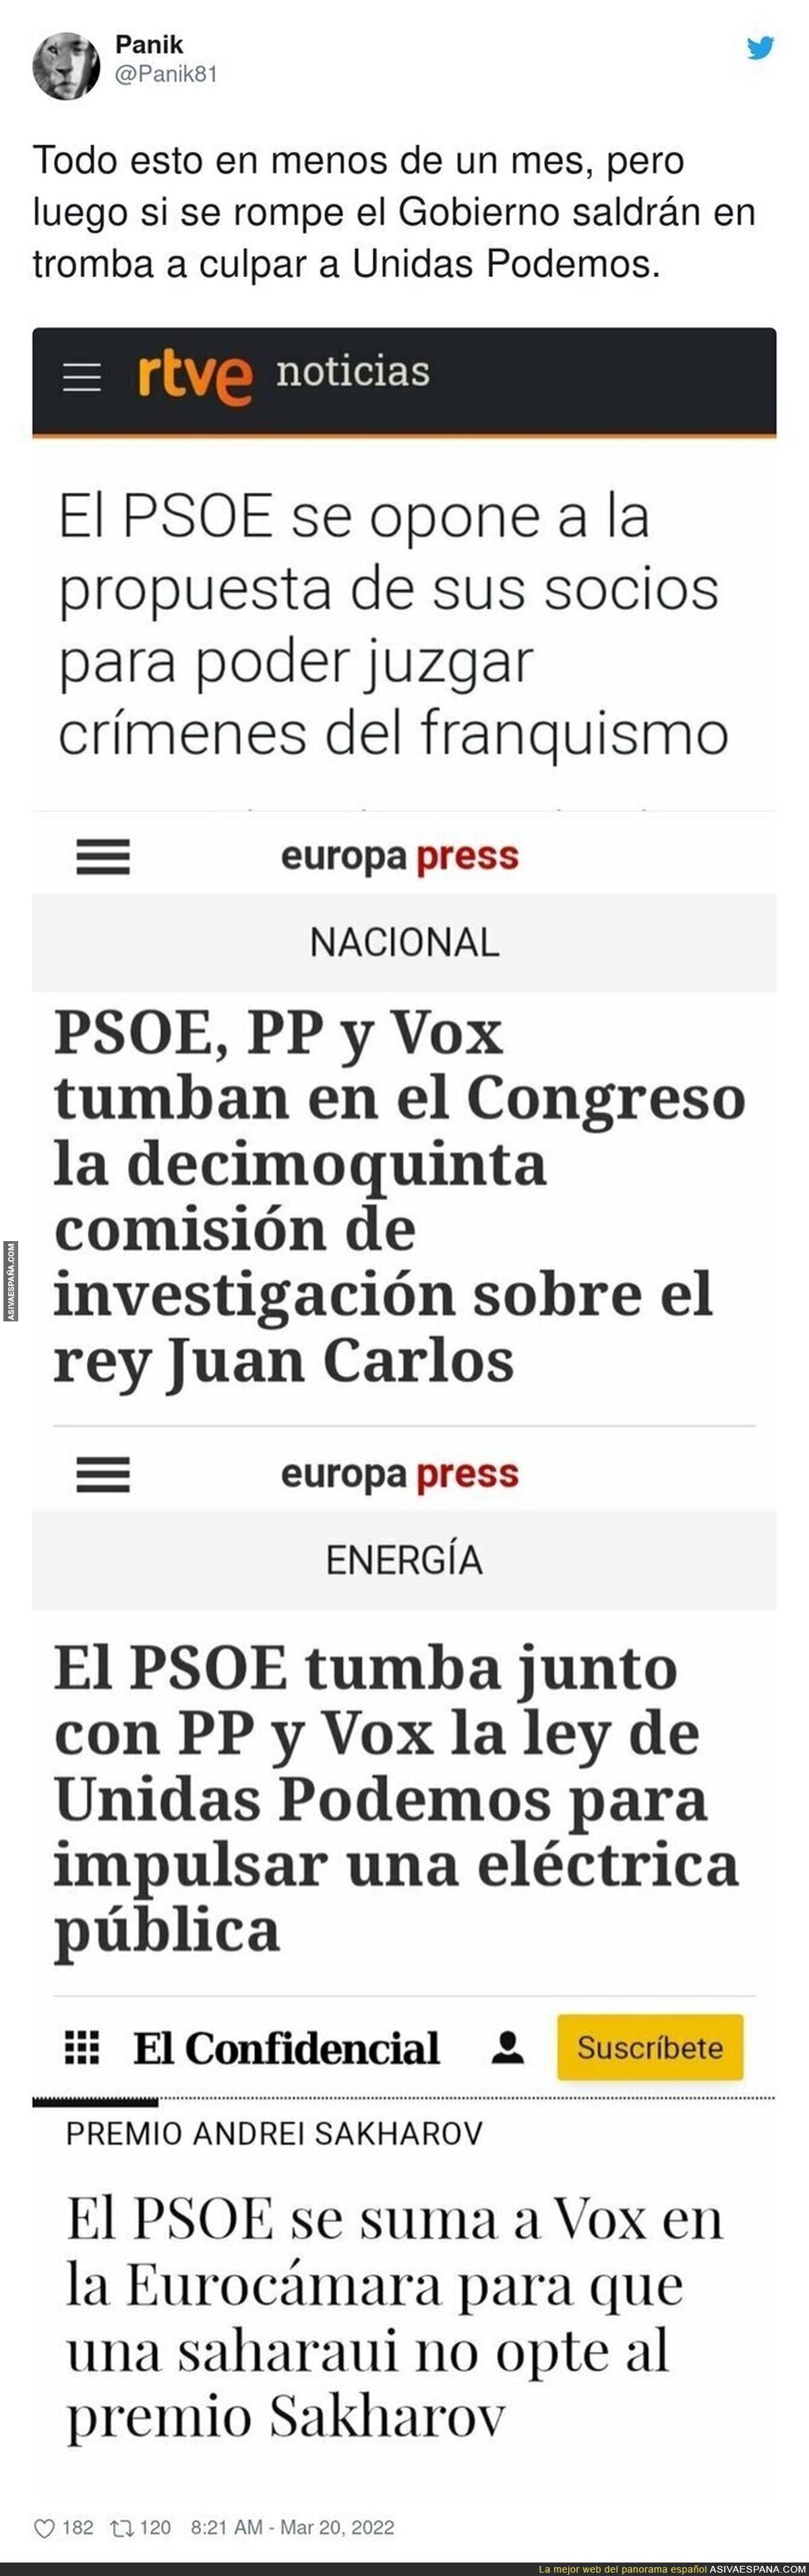 El PSOE nos lleva a la deriva